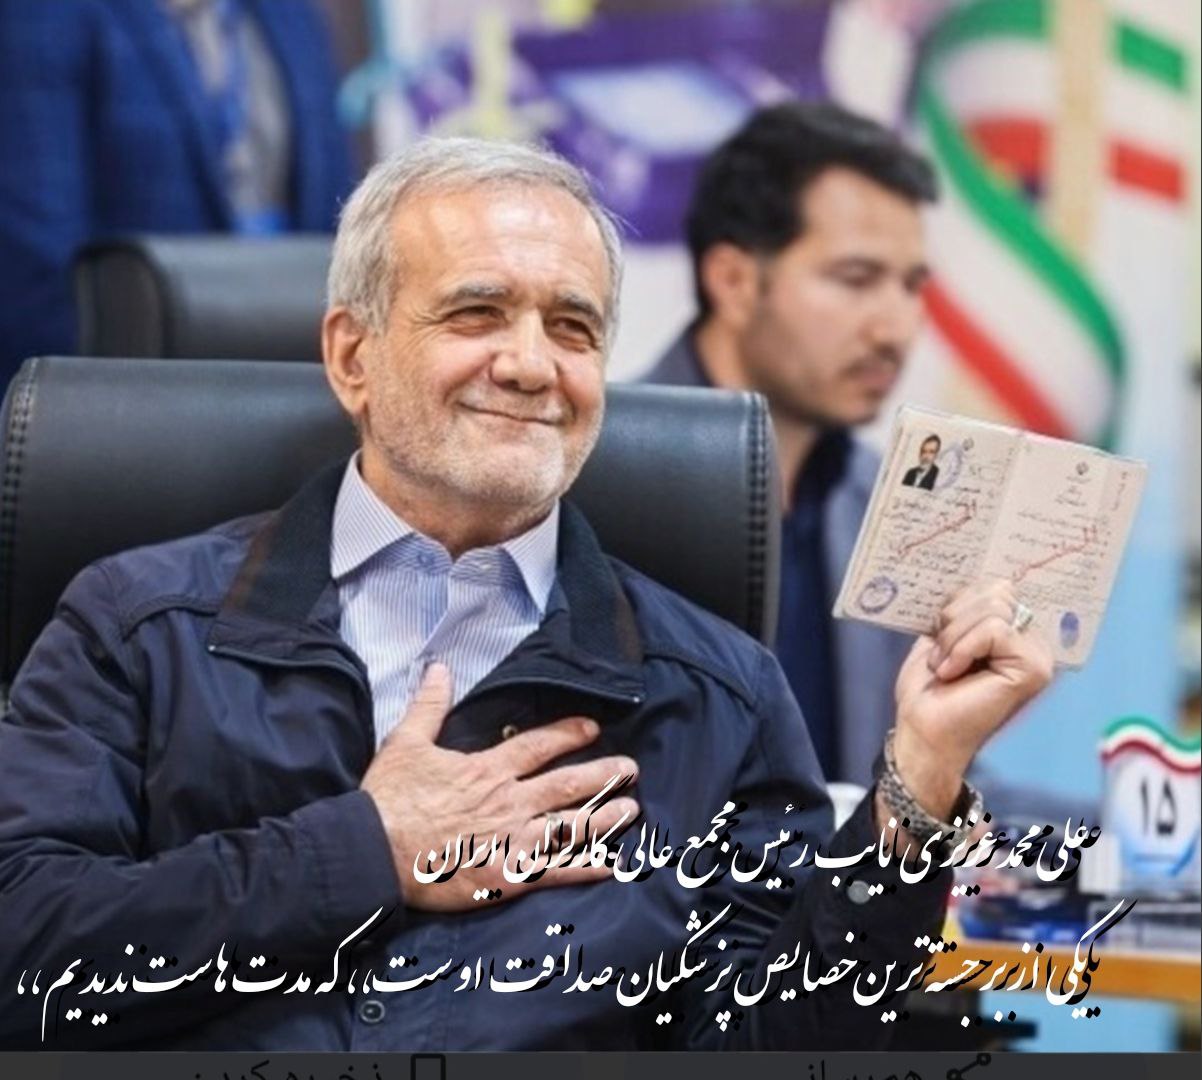 حمایت نایب رئیس مجمع عالی کارگران ایران از پزشکیان/صداقت دارد